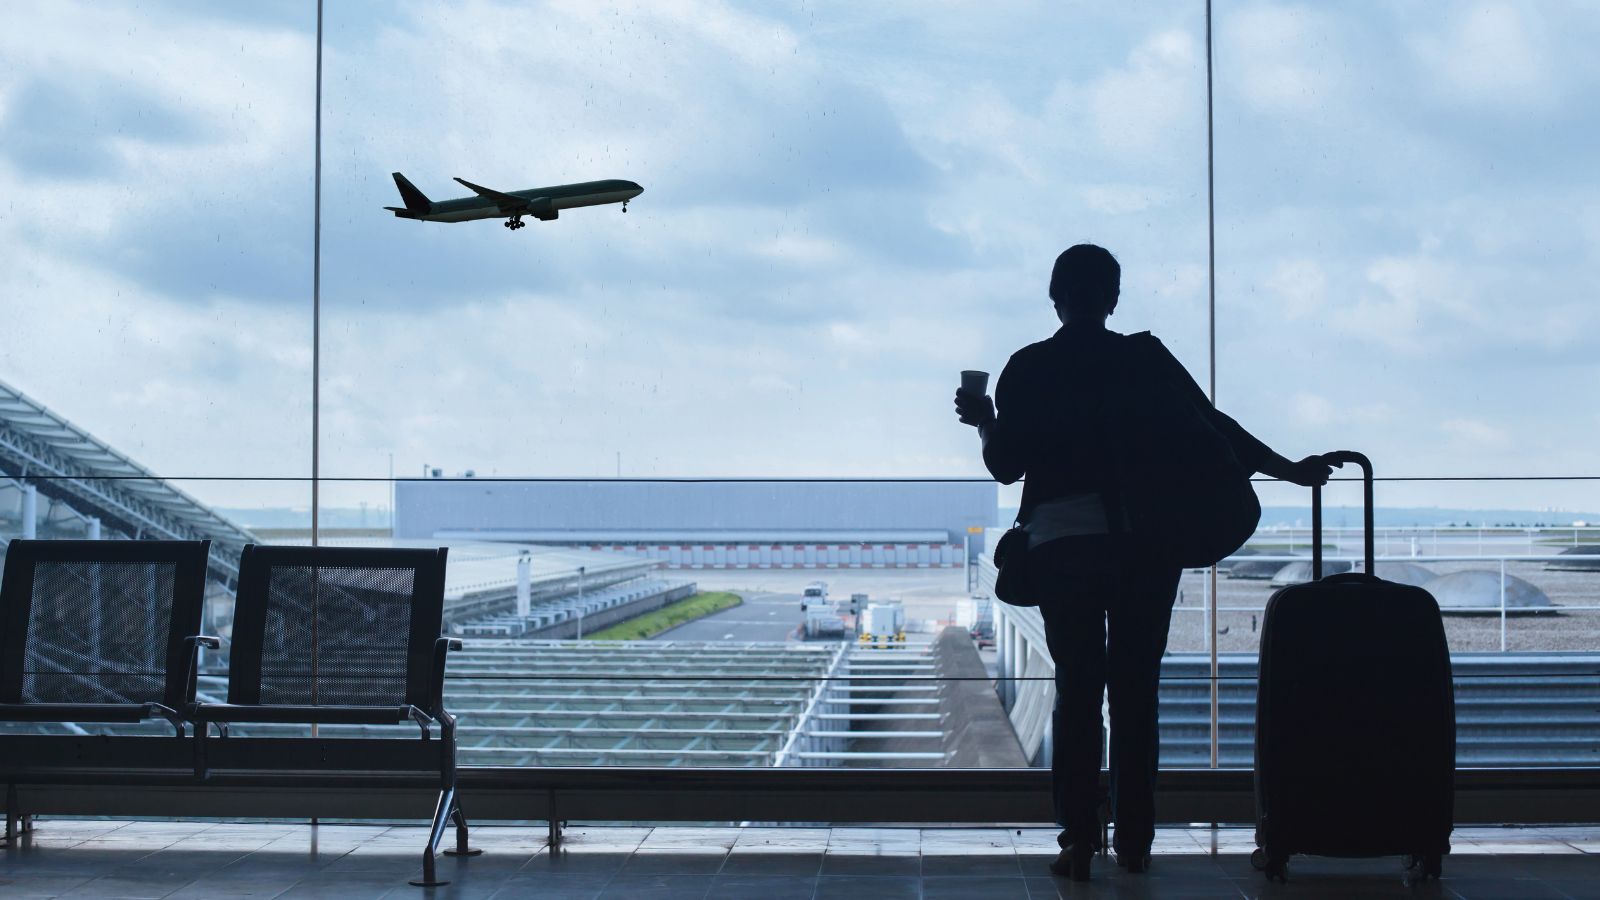 L’aeroporto di Milano Bergamo sta ridefinendo gli standard di sicurezza e servizio